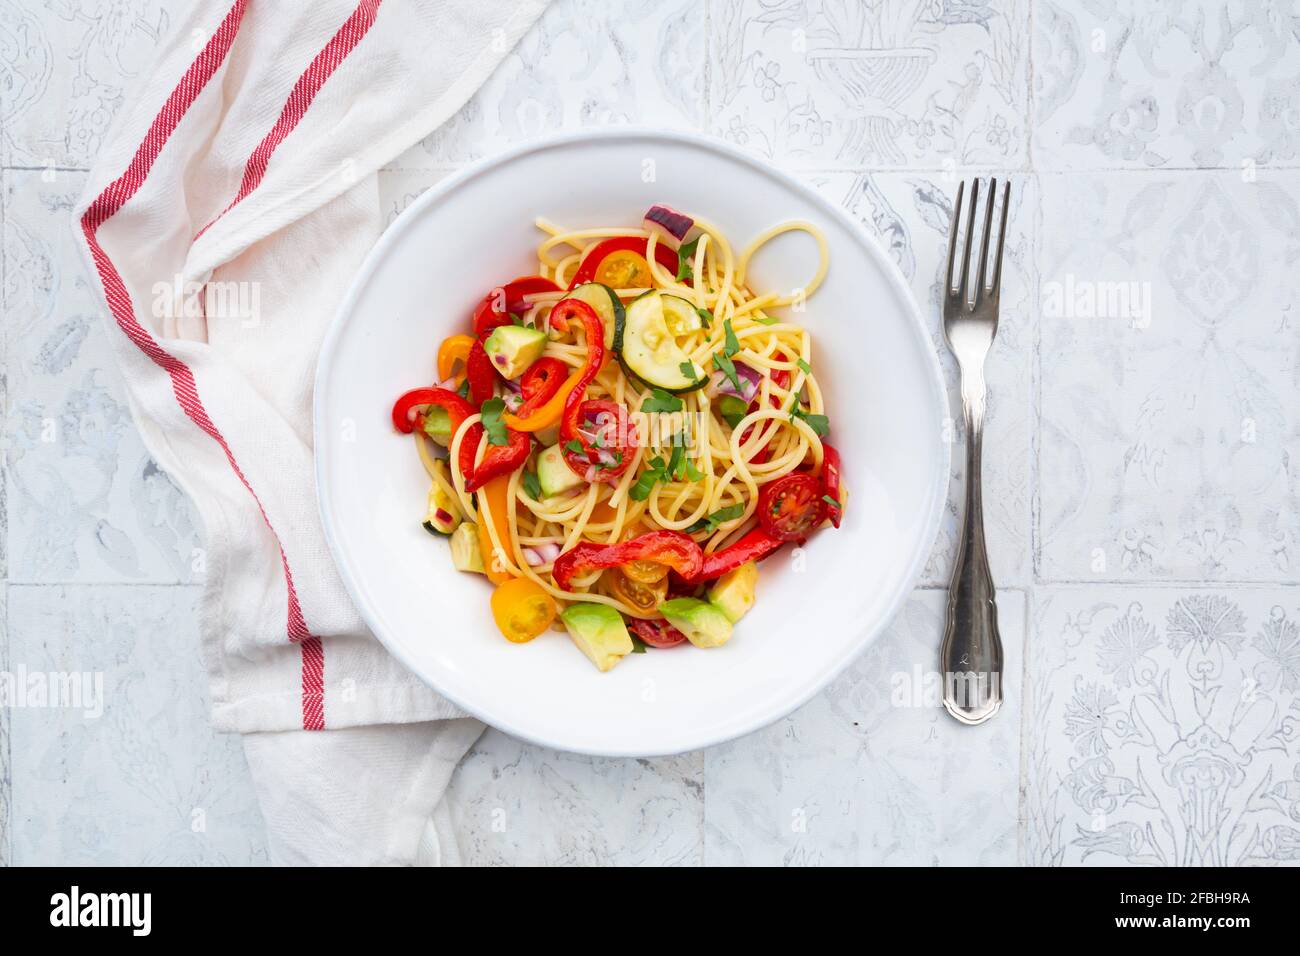 Spaghetti con verdure alla griglia, paprika, zucchine, avocado, pomodoro e coriandolo Foto Stock